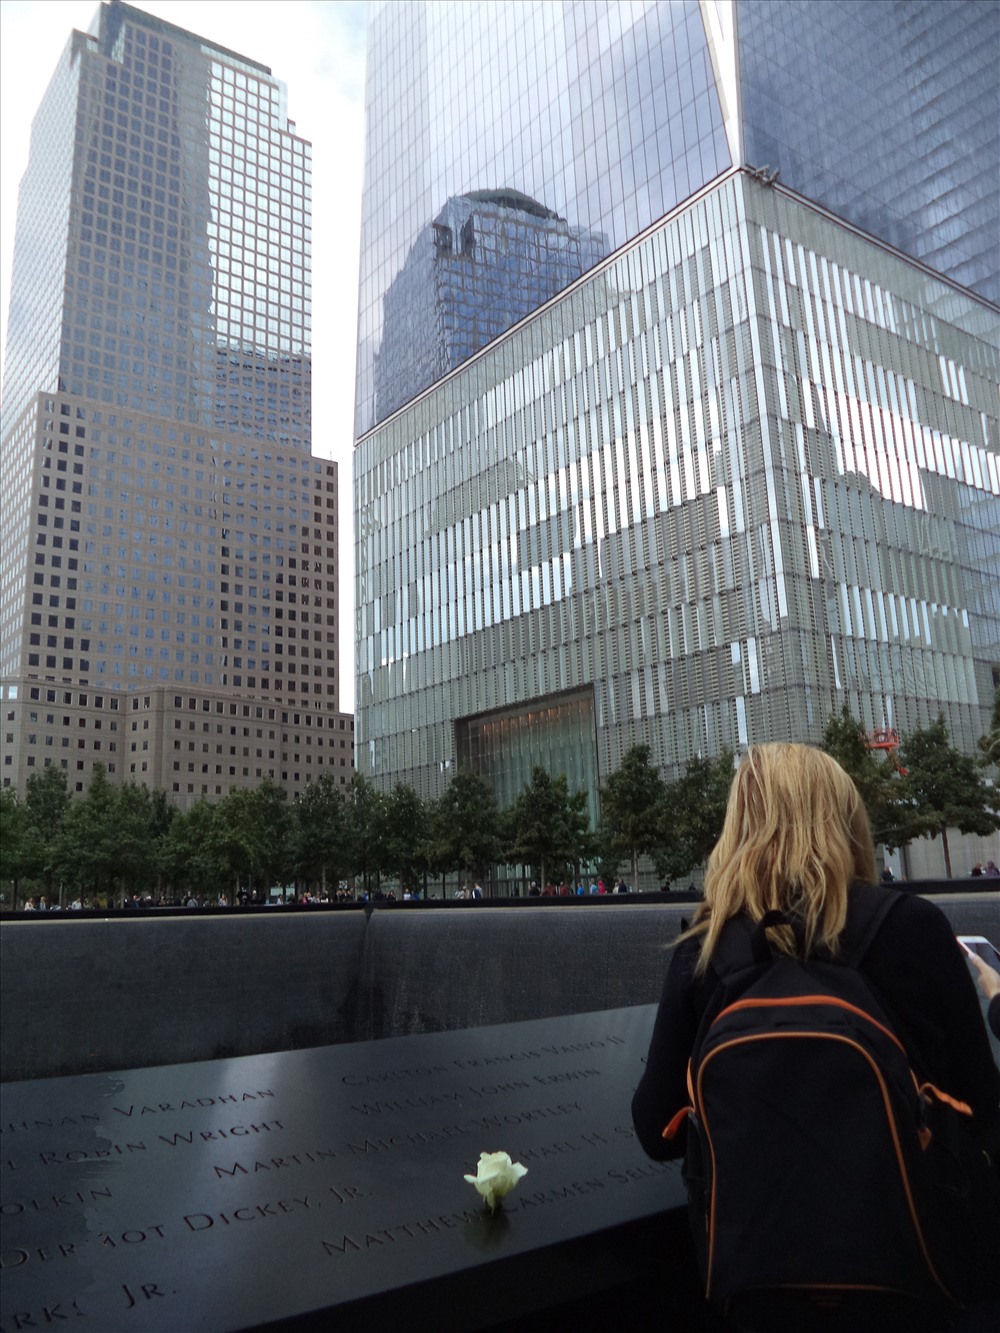 Quanh khu vực  Đài Tưởng niệm Quốc gia sự kiện 11.9 tọa lạc tại khu Lower Manhattan (Hạ Manhattan). 2.977 nạn nhân đã thiệt mạng được khắc tên trên bờ của từng hồ nước.
